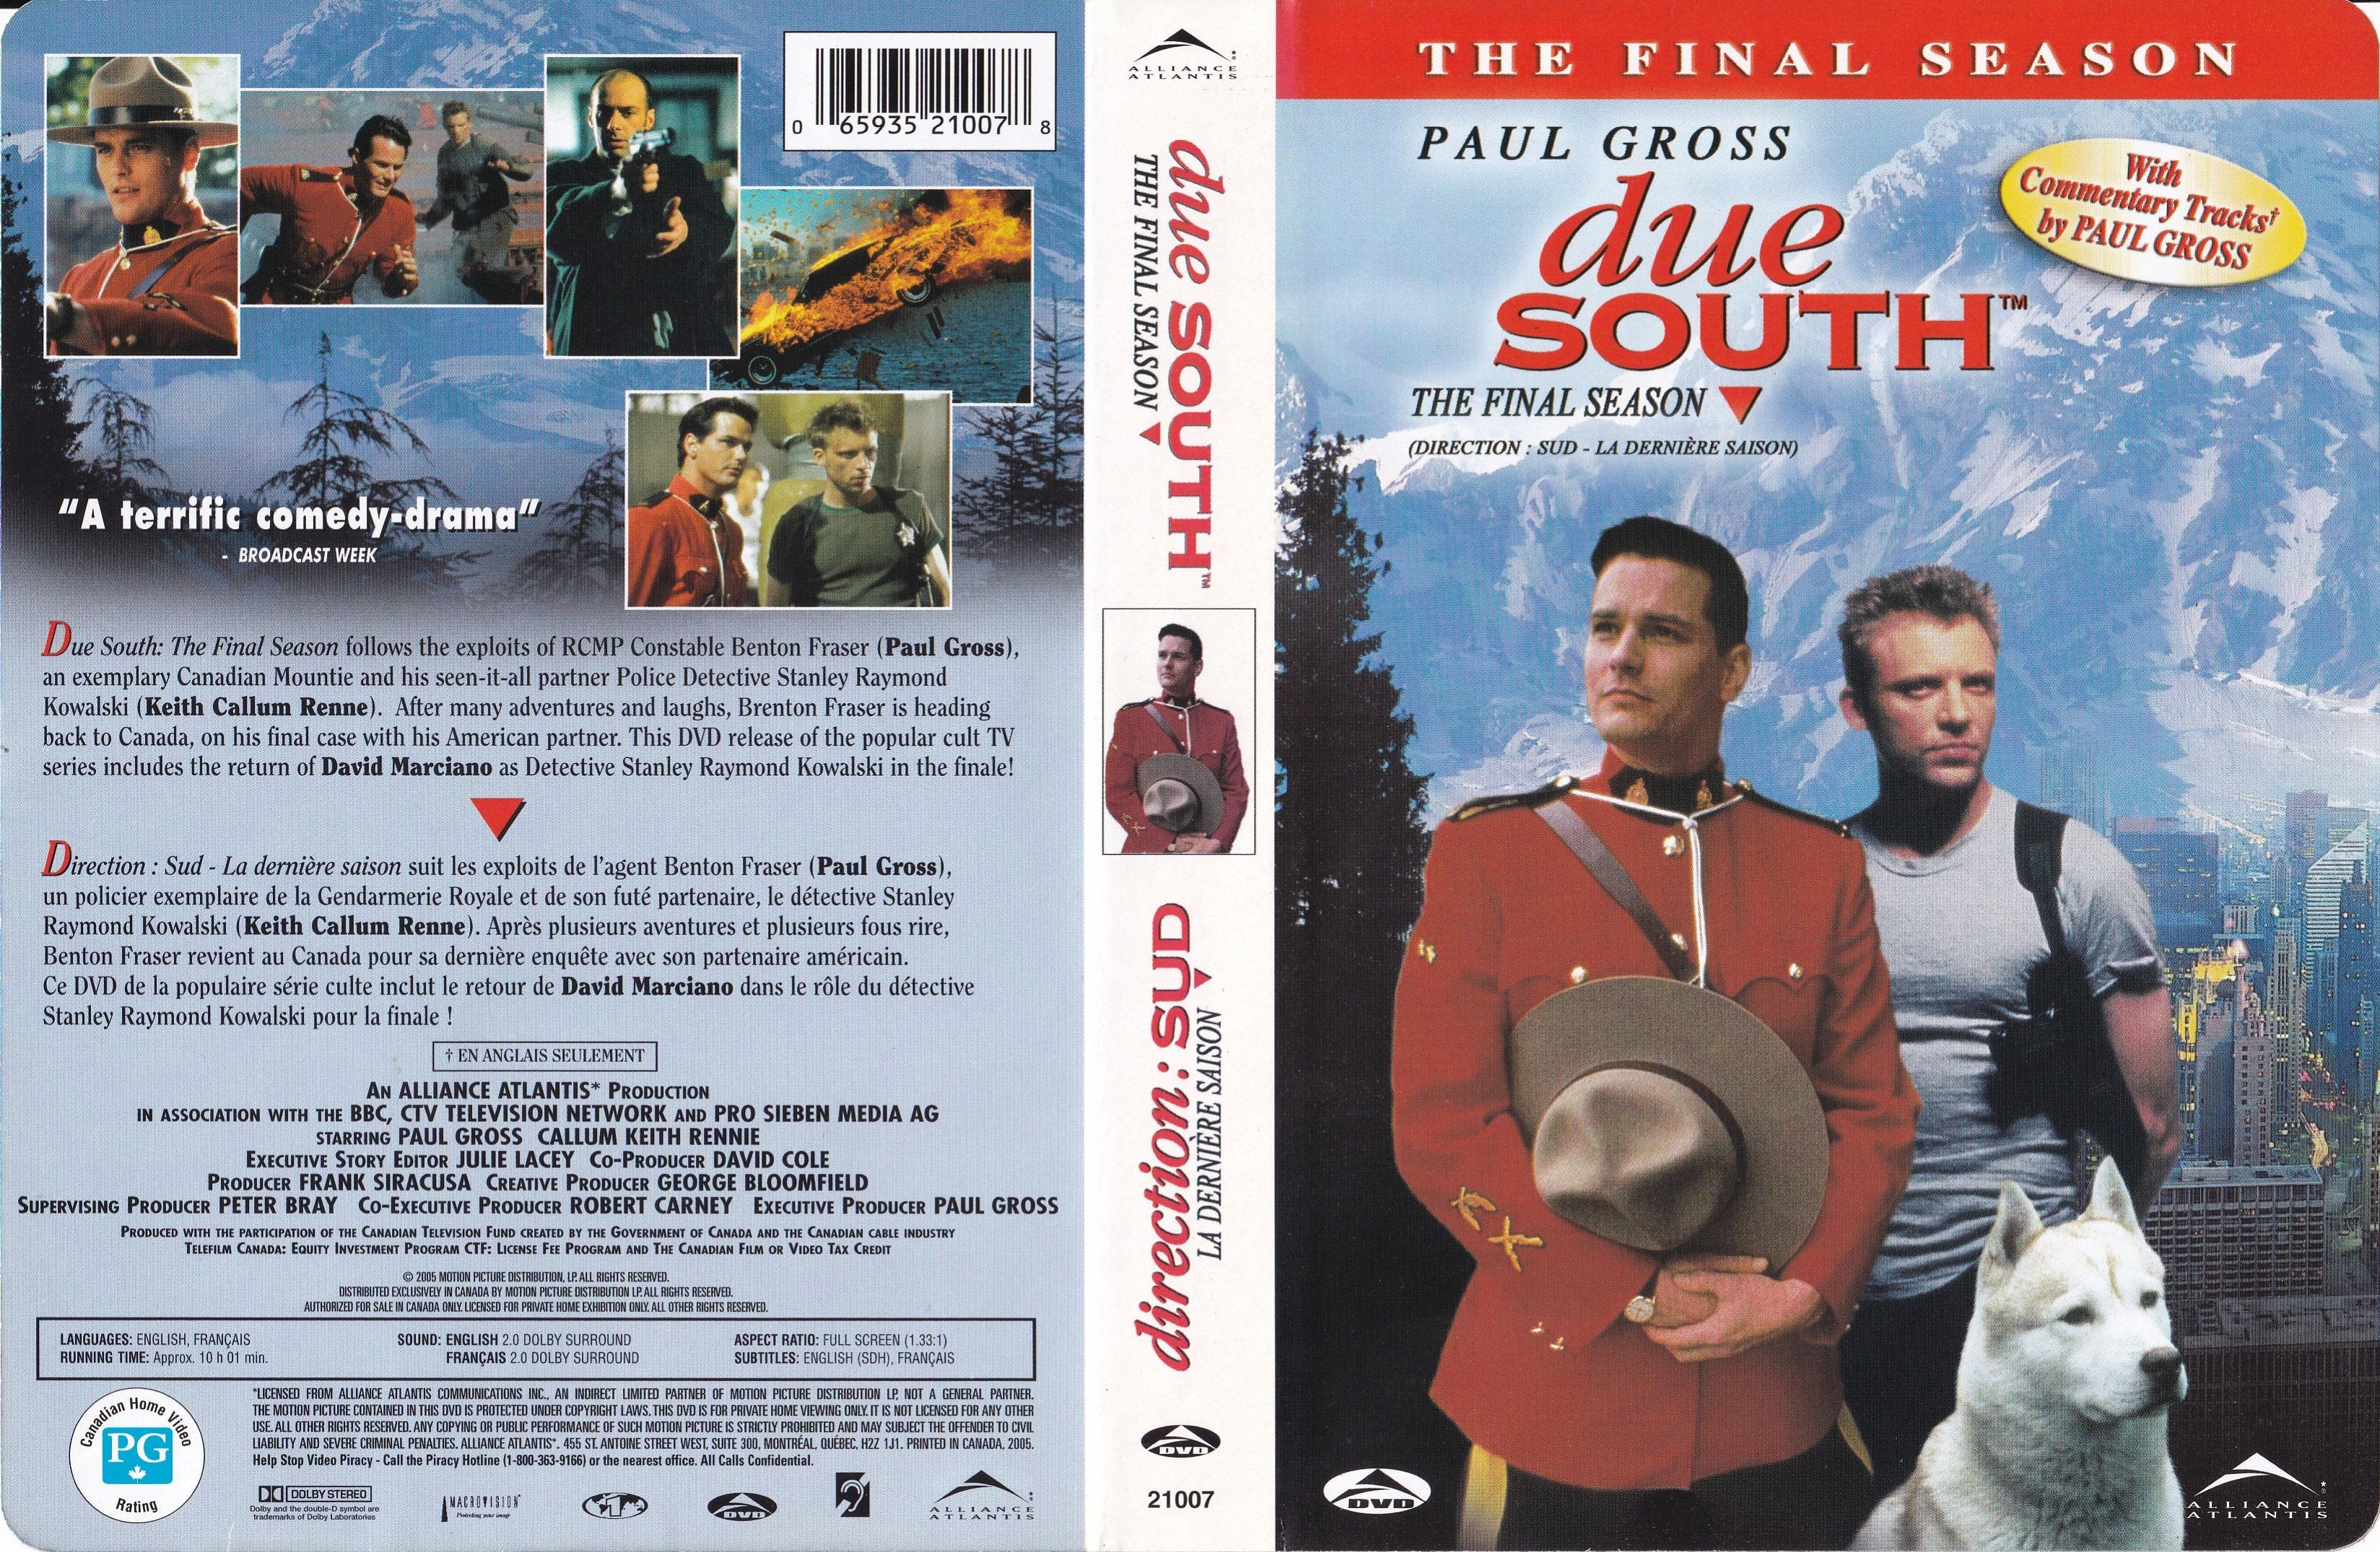 Jaquette DVD Due South - Direction Sud - Un Tandem de Choc Saison 4 (Canadienne) v2